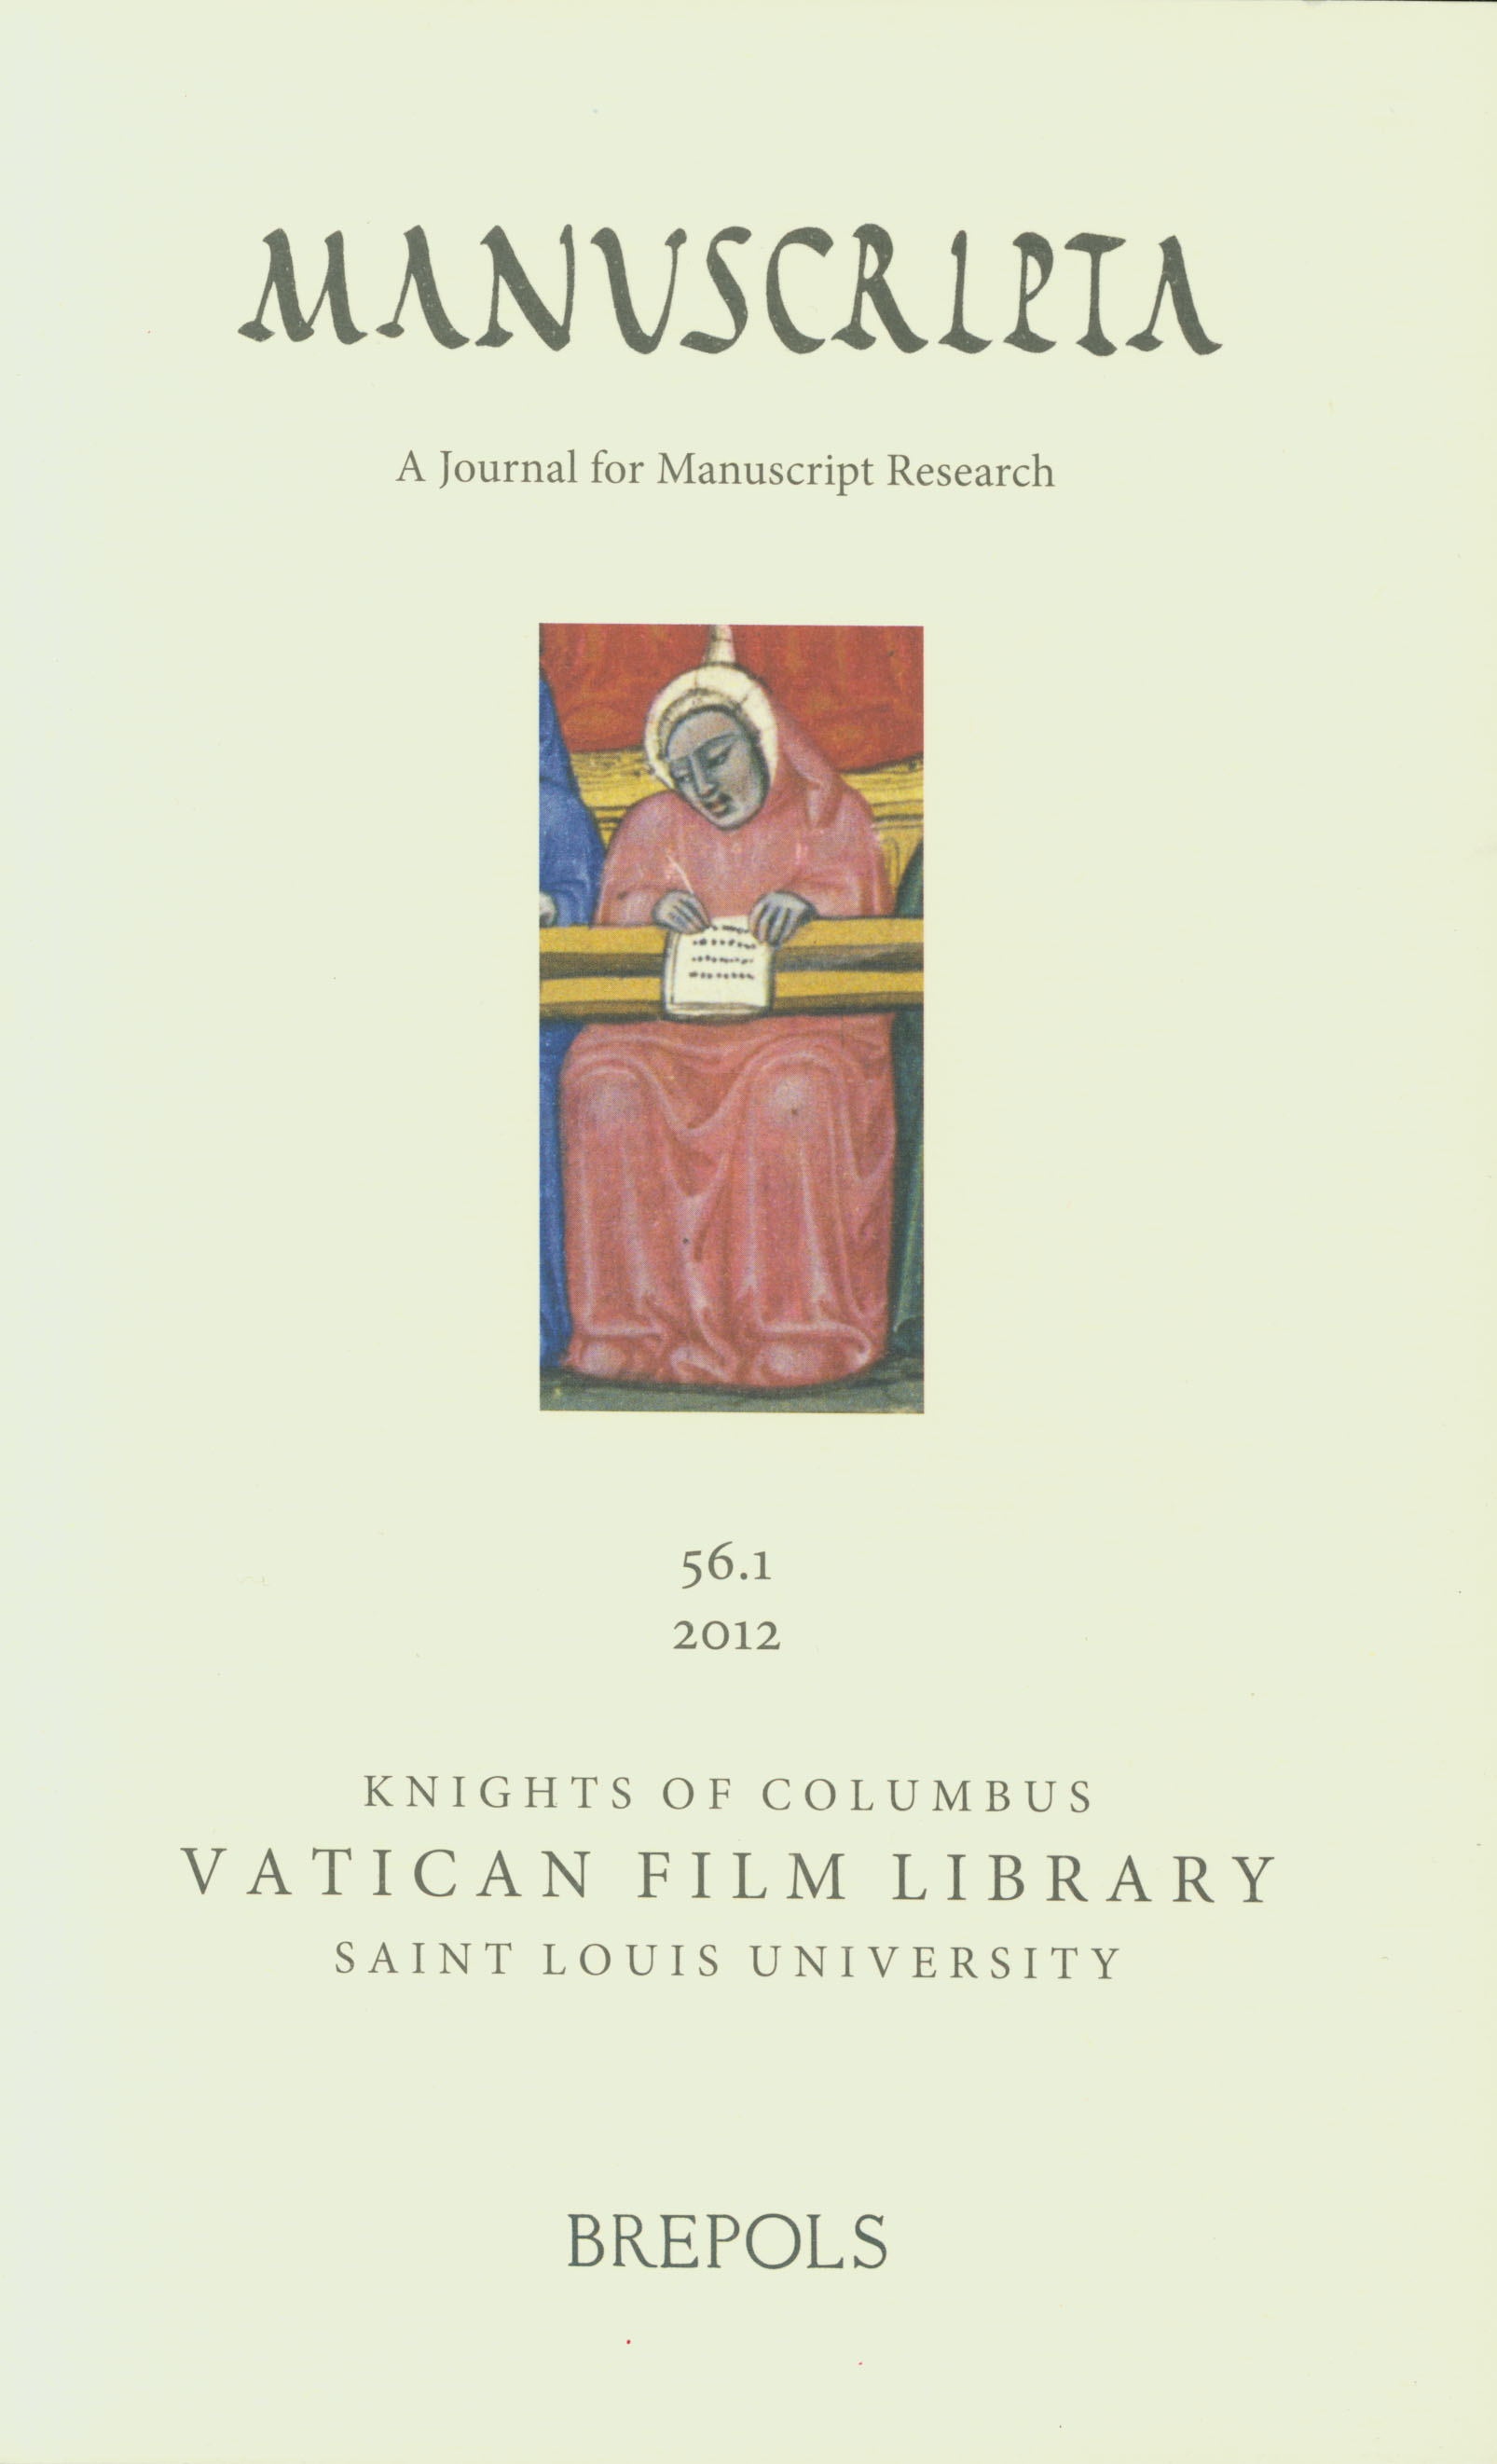 New Issue of Manuscripta – Vol. 56, no. 1 (2012)